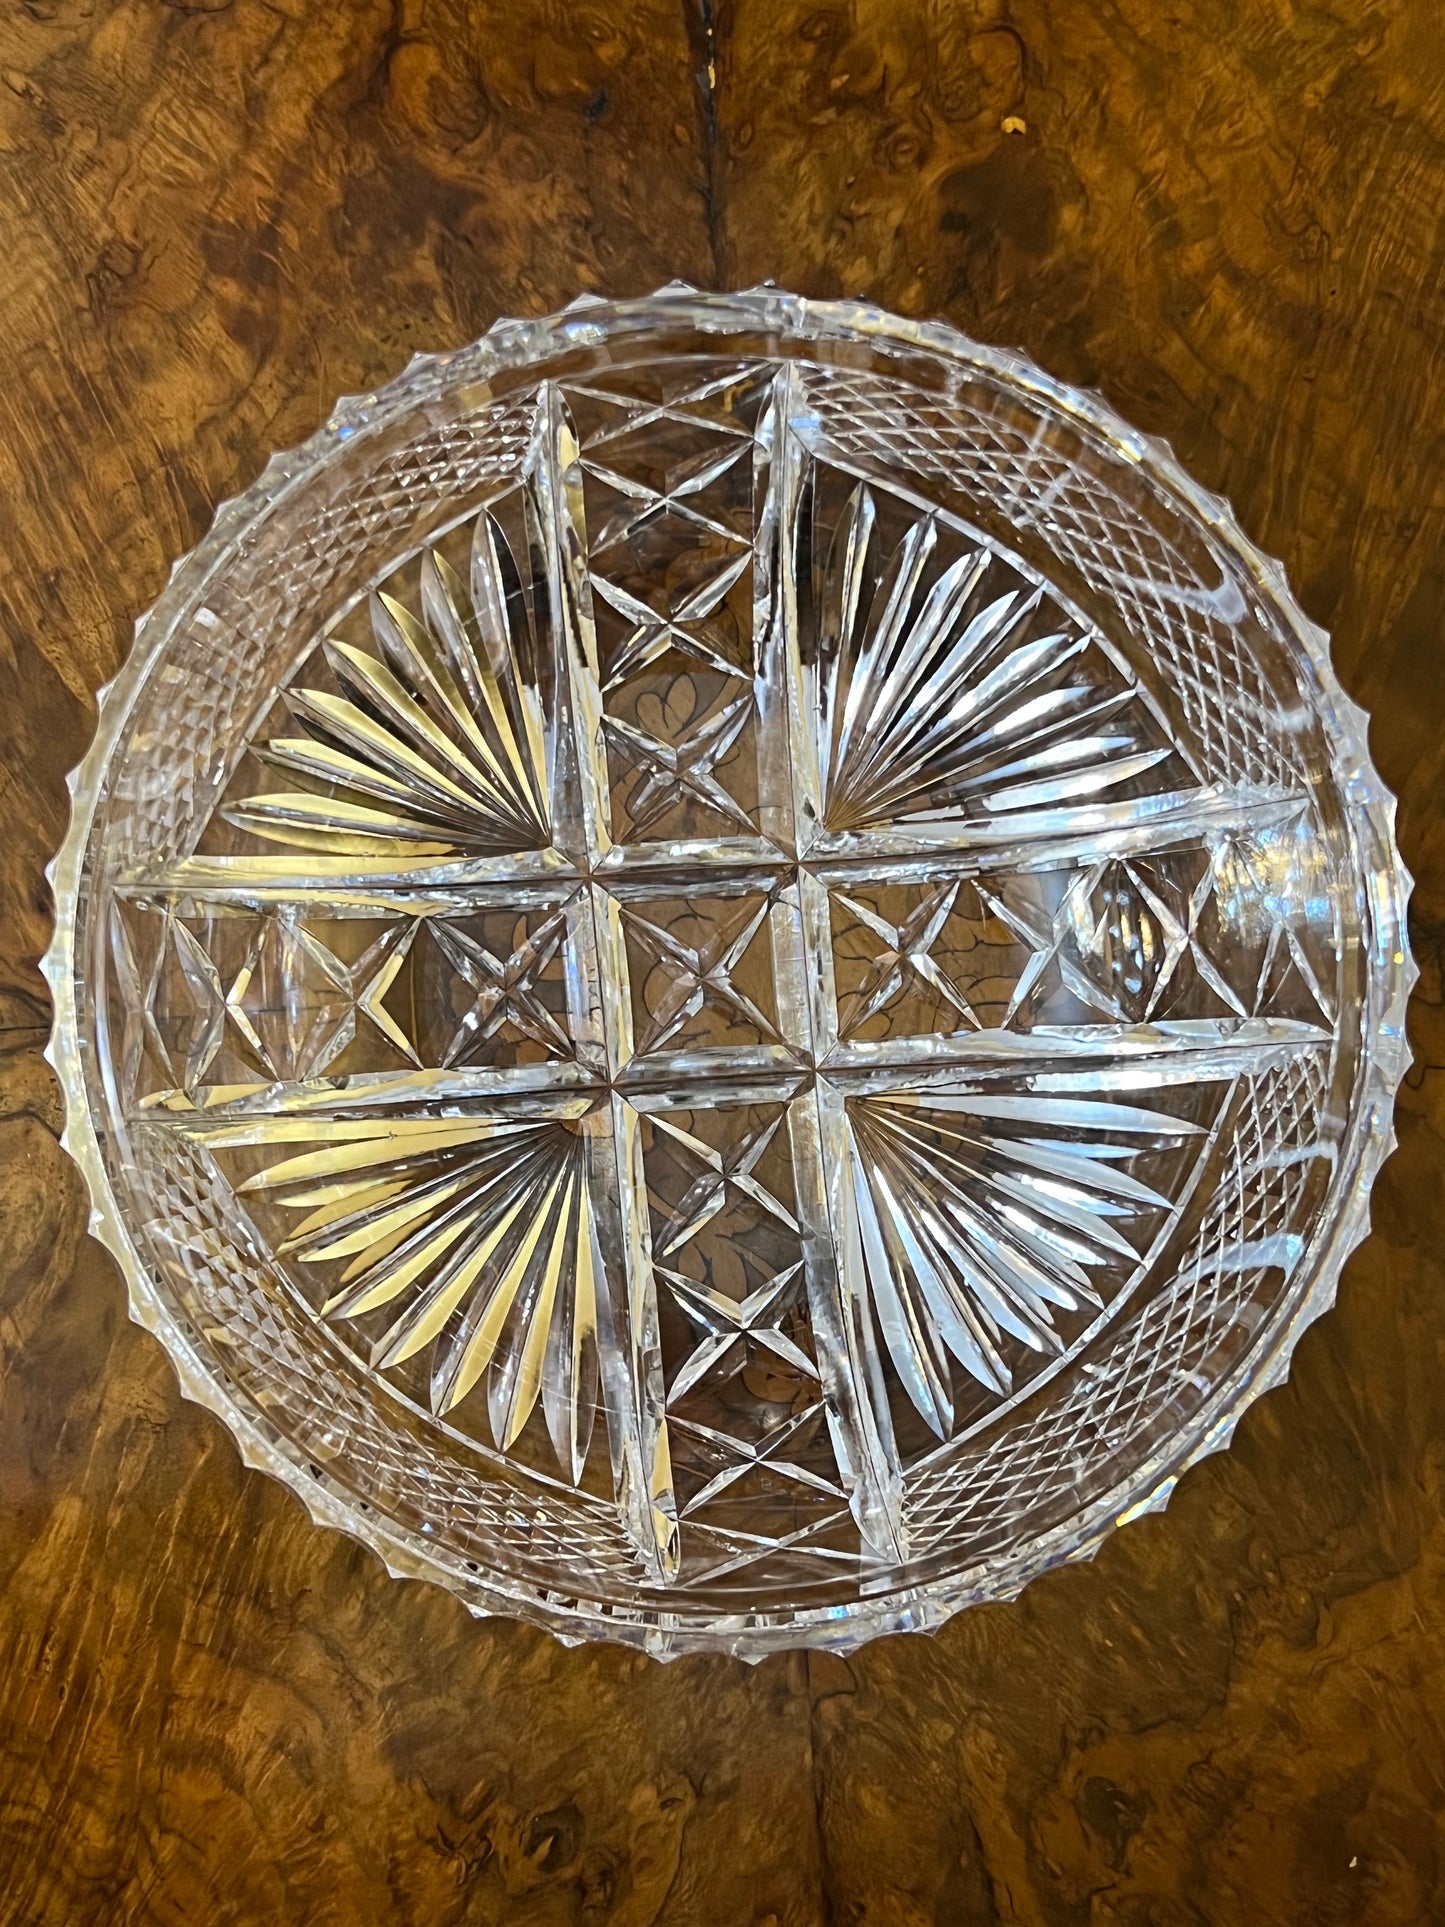 Vintage Crystal Mixed Cutout Design Bowl